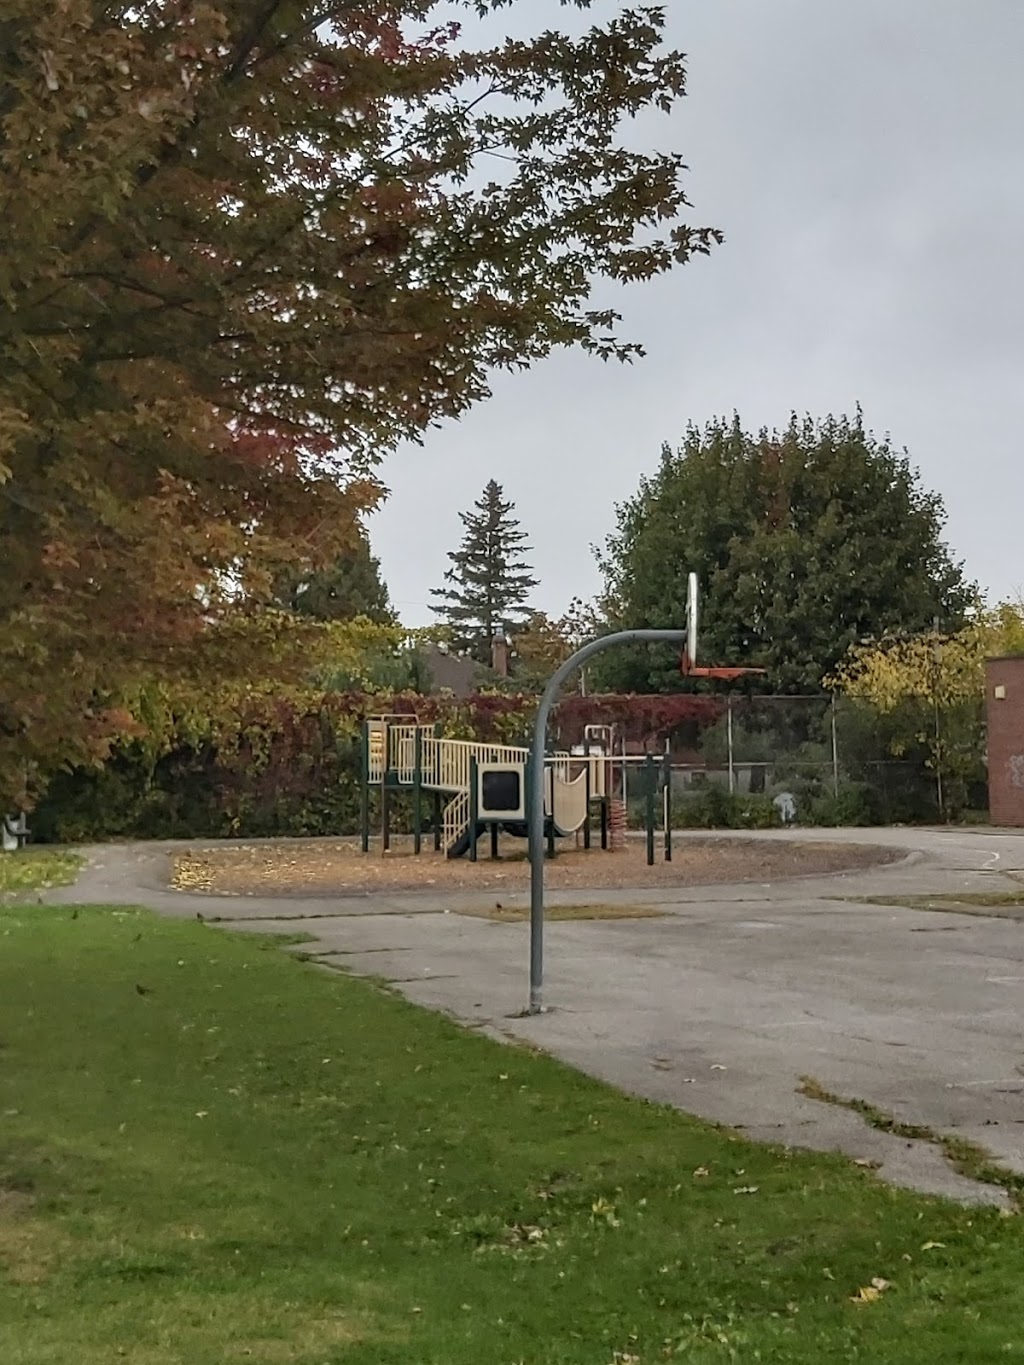 Harwood Public School | school | 50 Leigh St, York, ON M6N 3X3, Canada | 4163942350 OR +1 416-394-2350